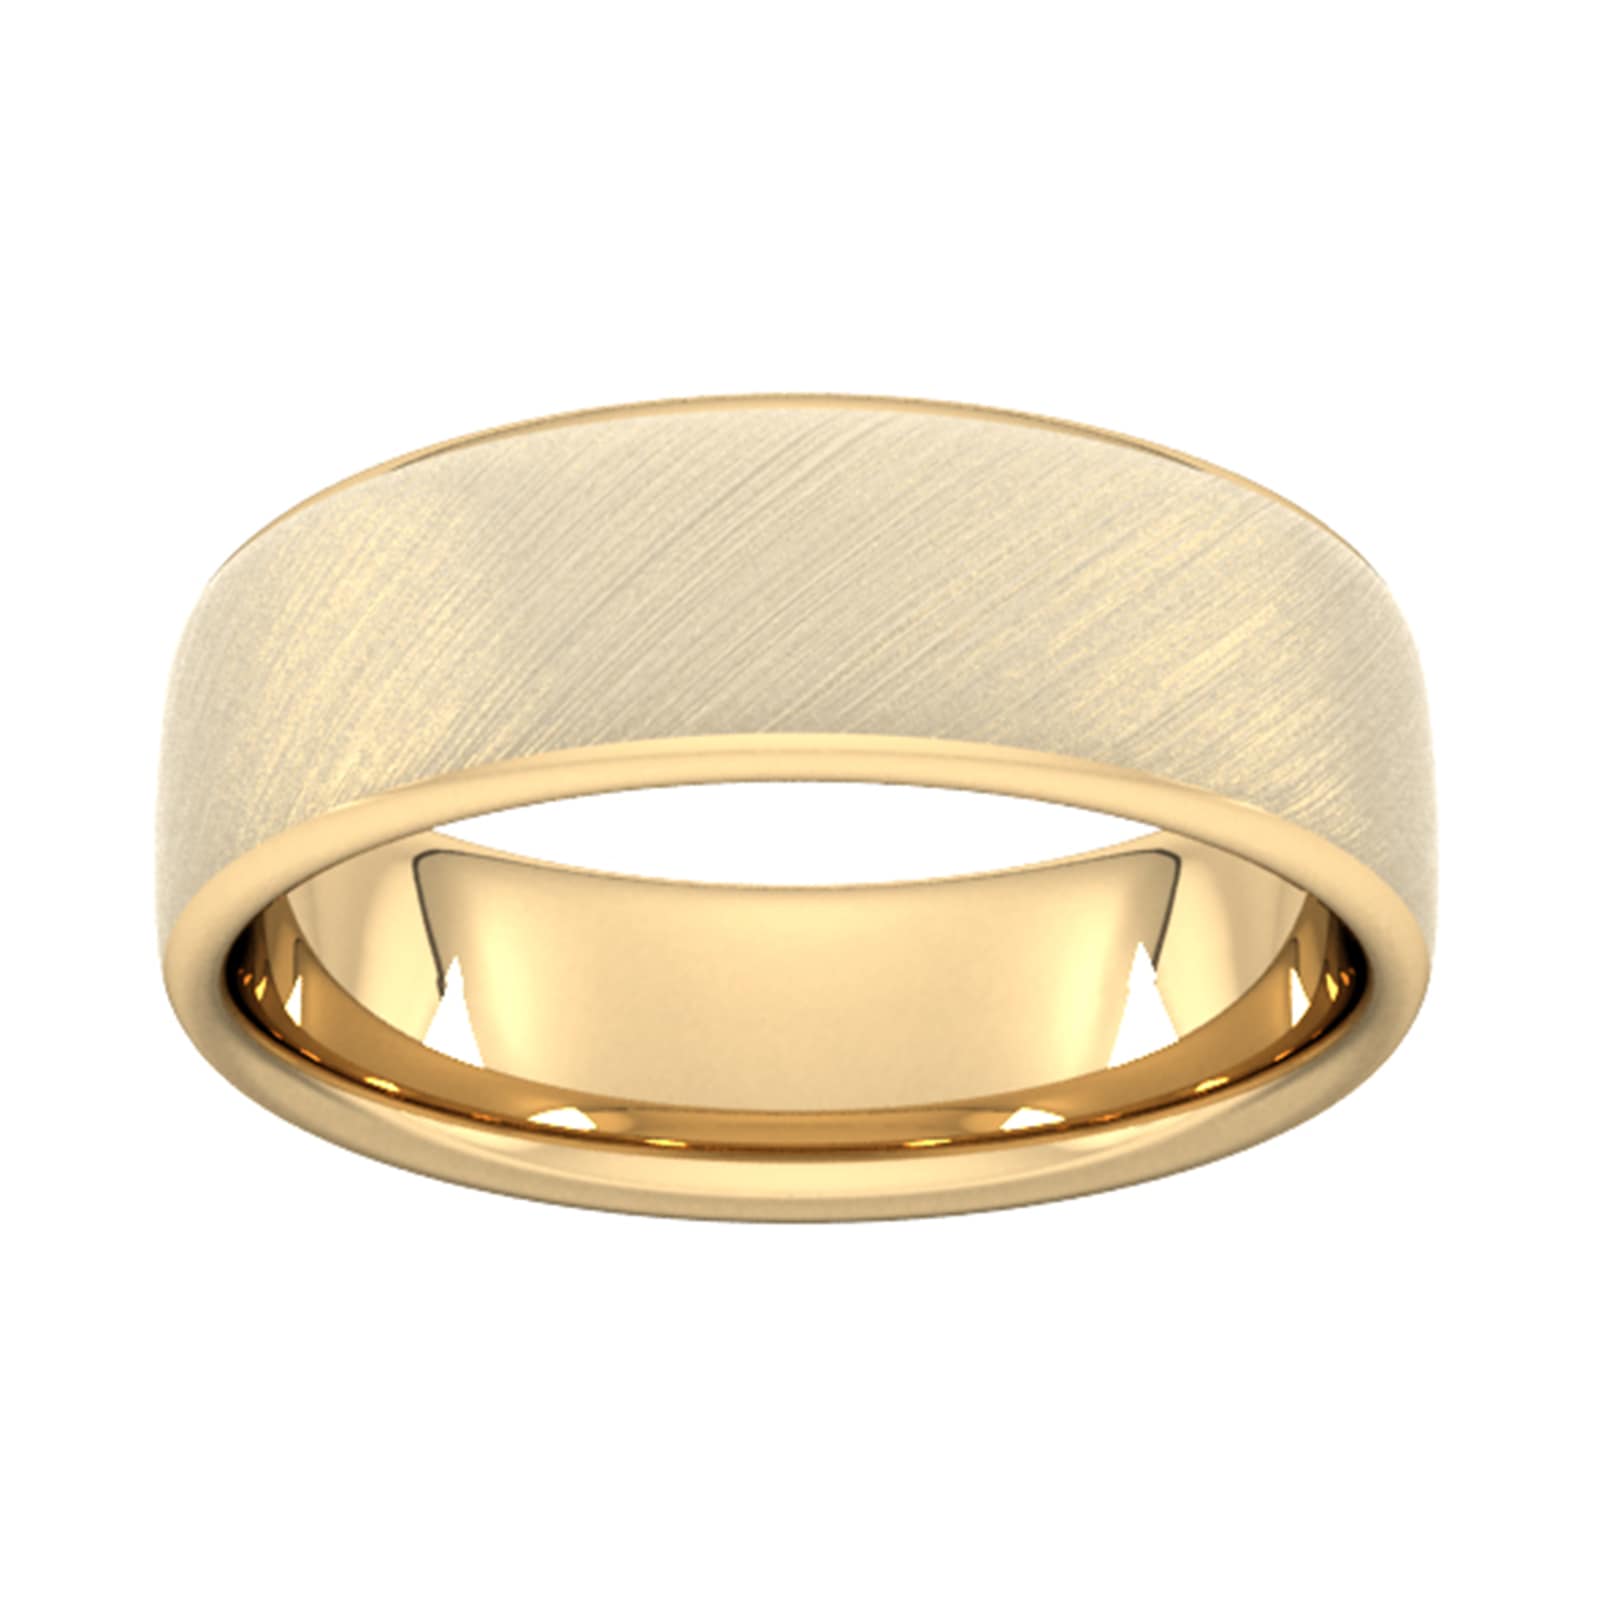 6mm Slight Court Heavy Diagonal Matt Finish Wedding Ring In 18 Carat Yellow Gold - Ring Size L